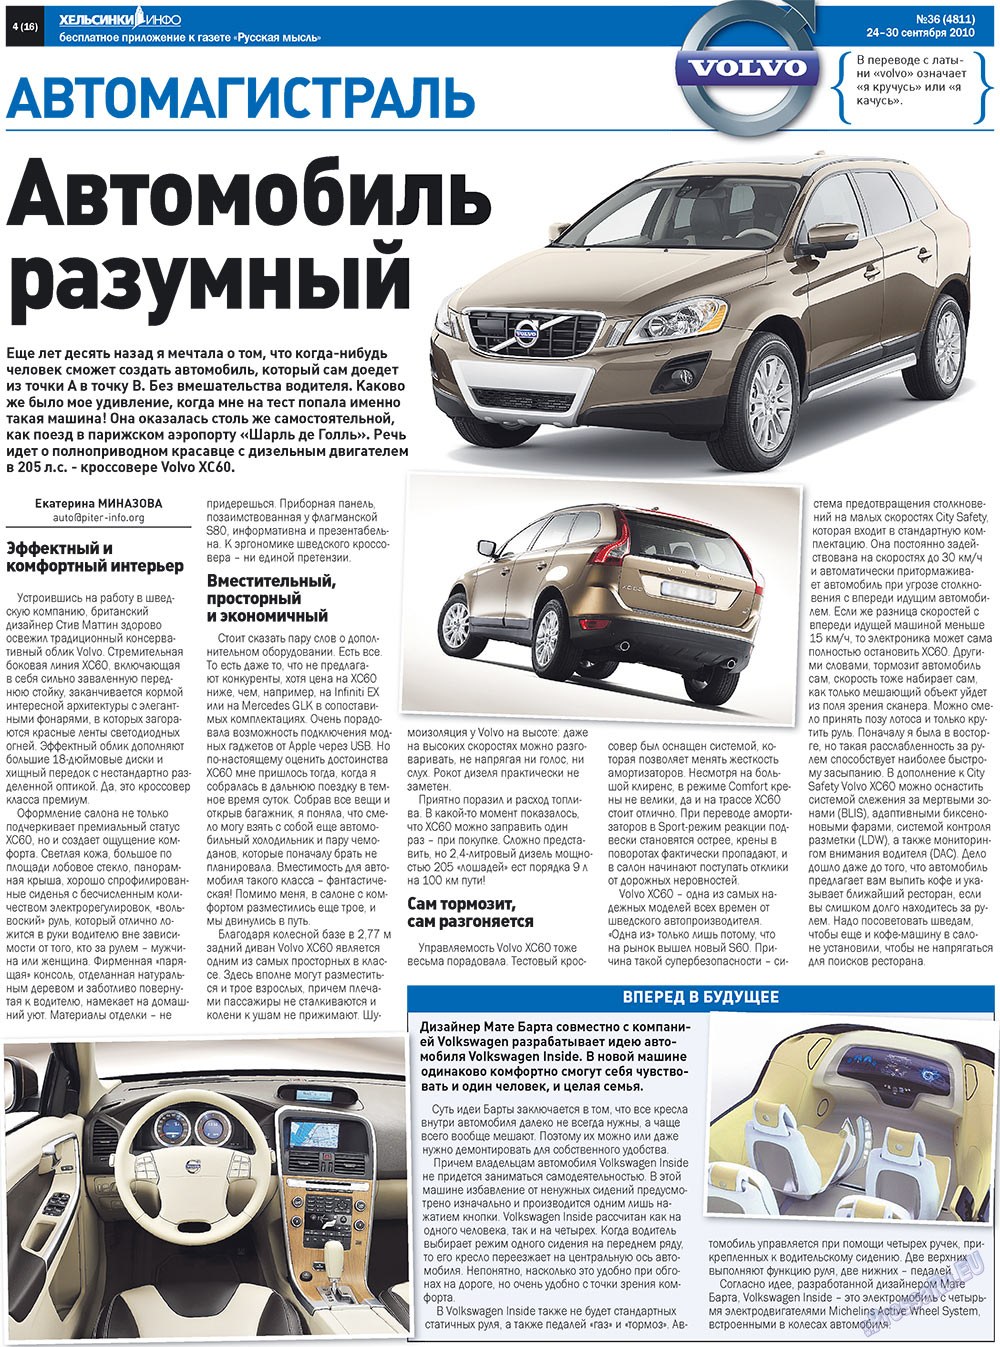 Русская Мысль (газета). 2010 год, номер 36, стр. 40